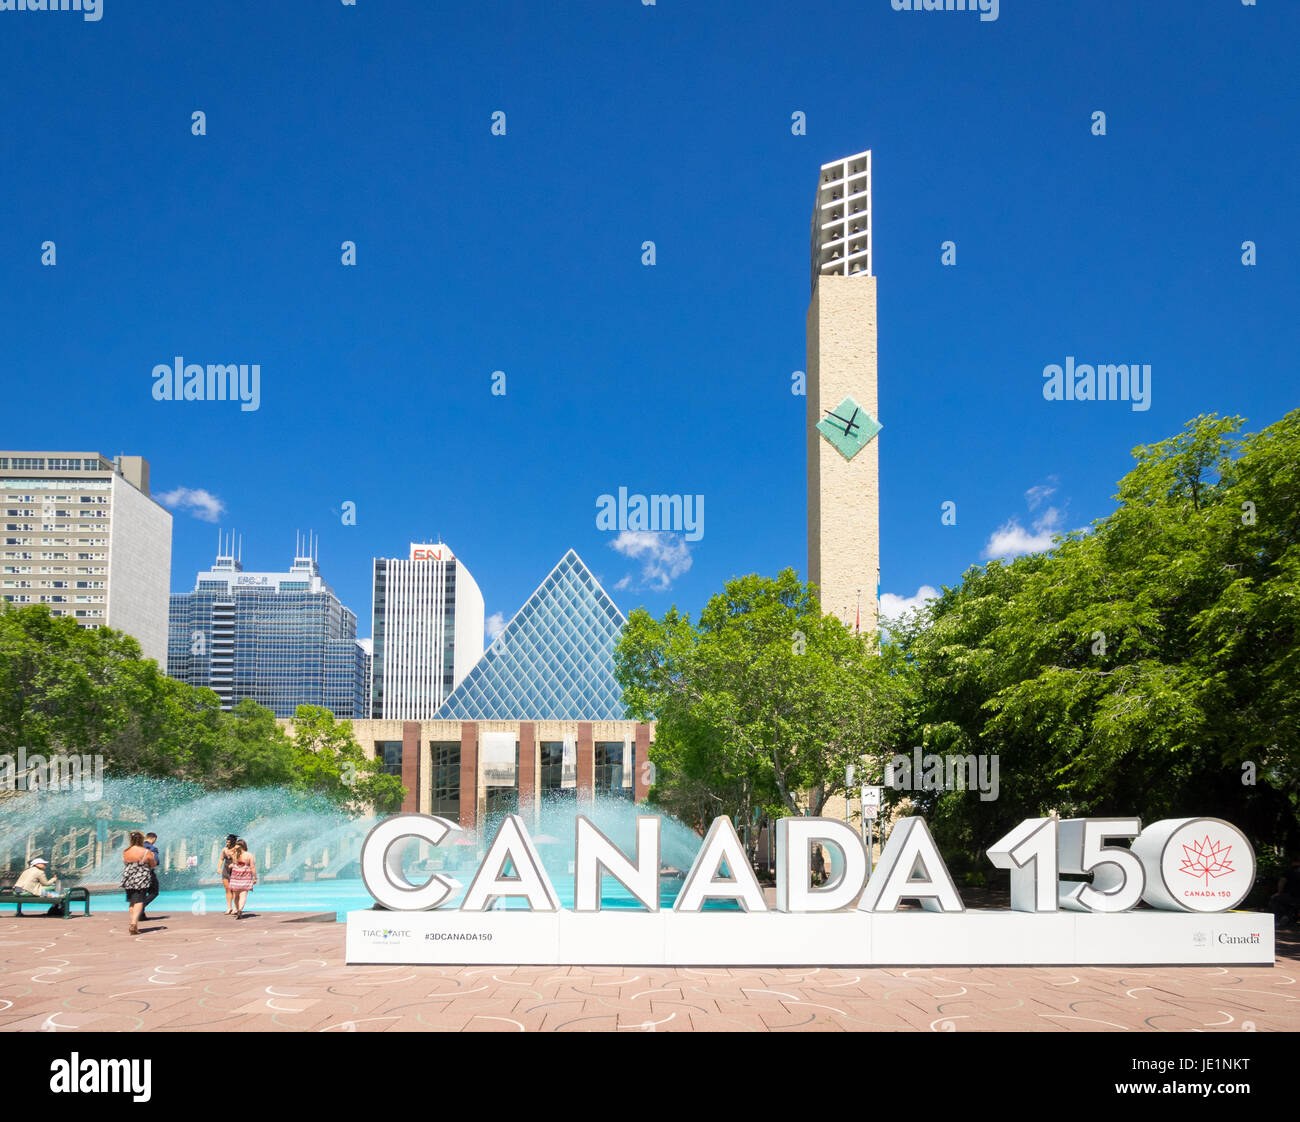 Le Canada 150 3D signe à Sir Winston Churchill Square à Edmonton, Alberta, Canada. L'enseigne célèbre le 150e anniversaire du Canada. Banque D'Images